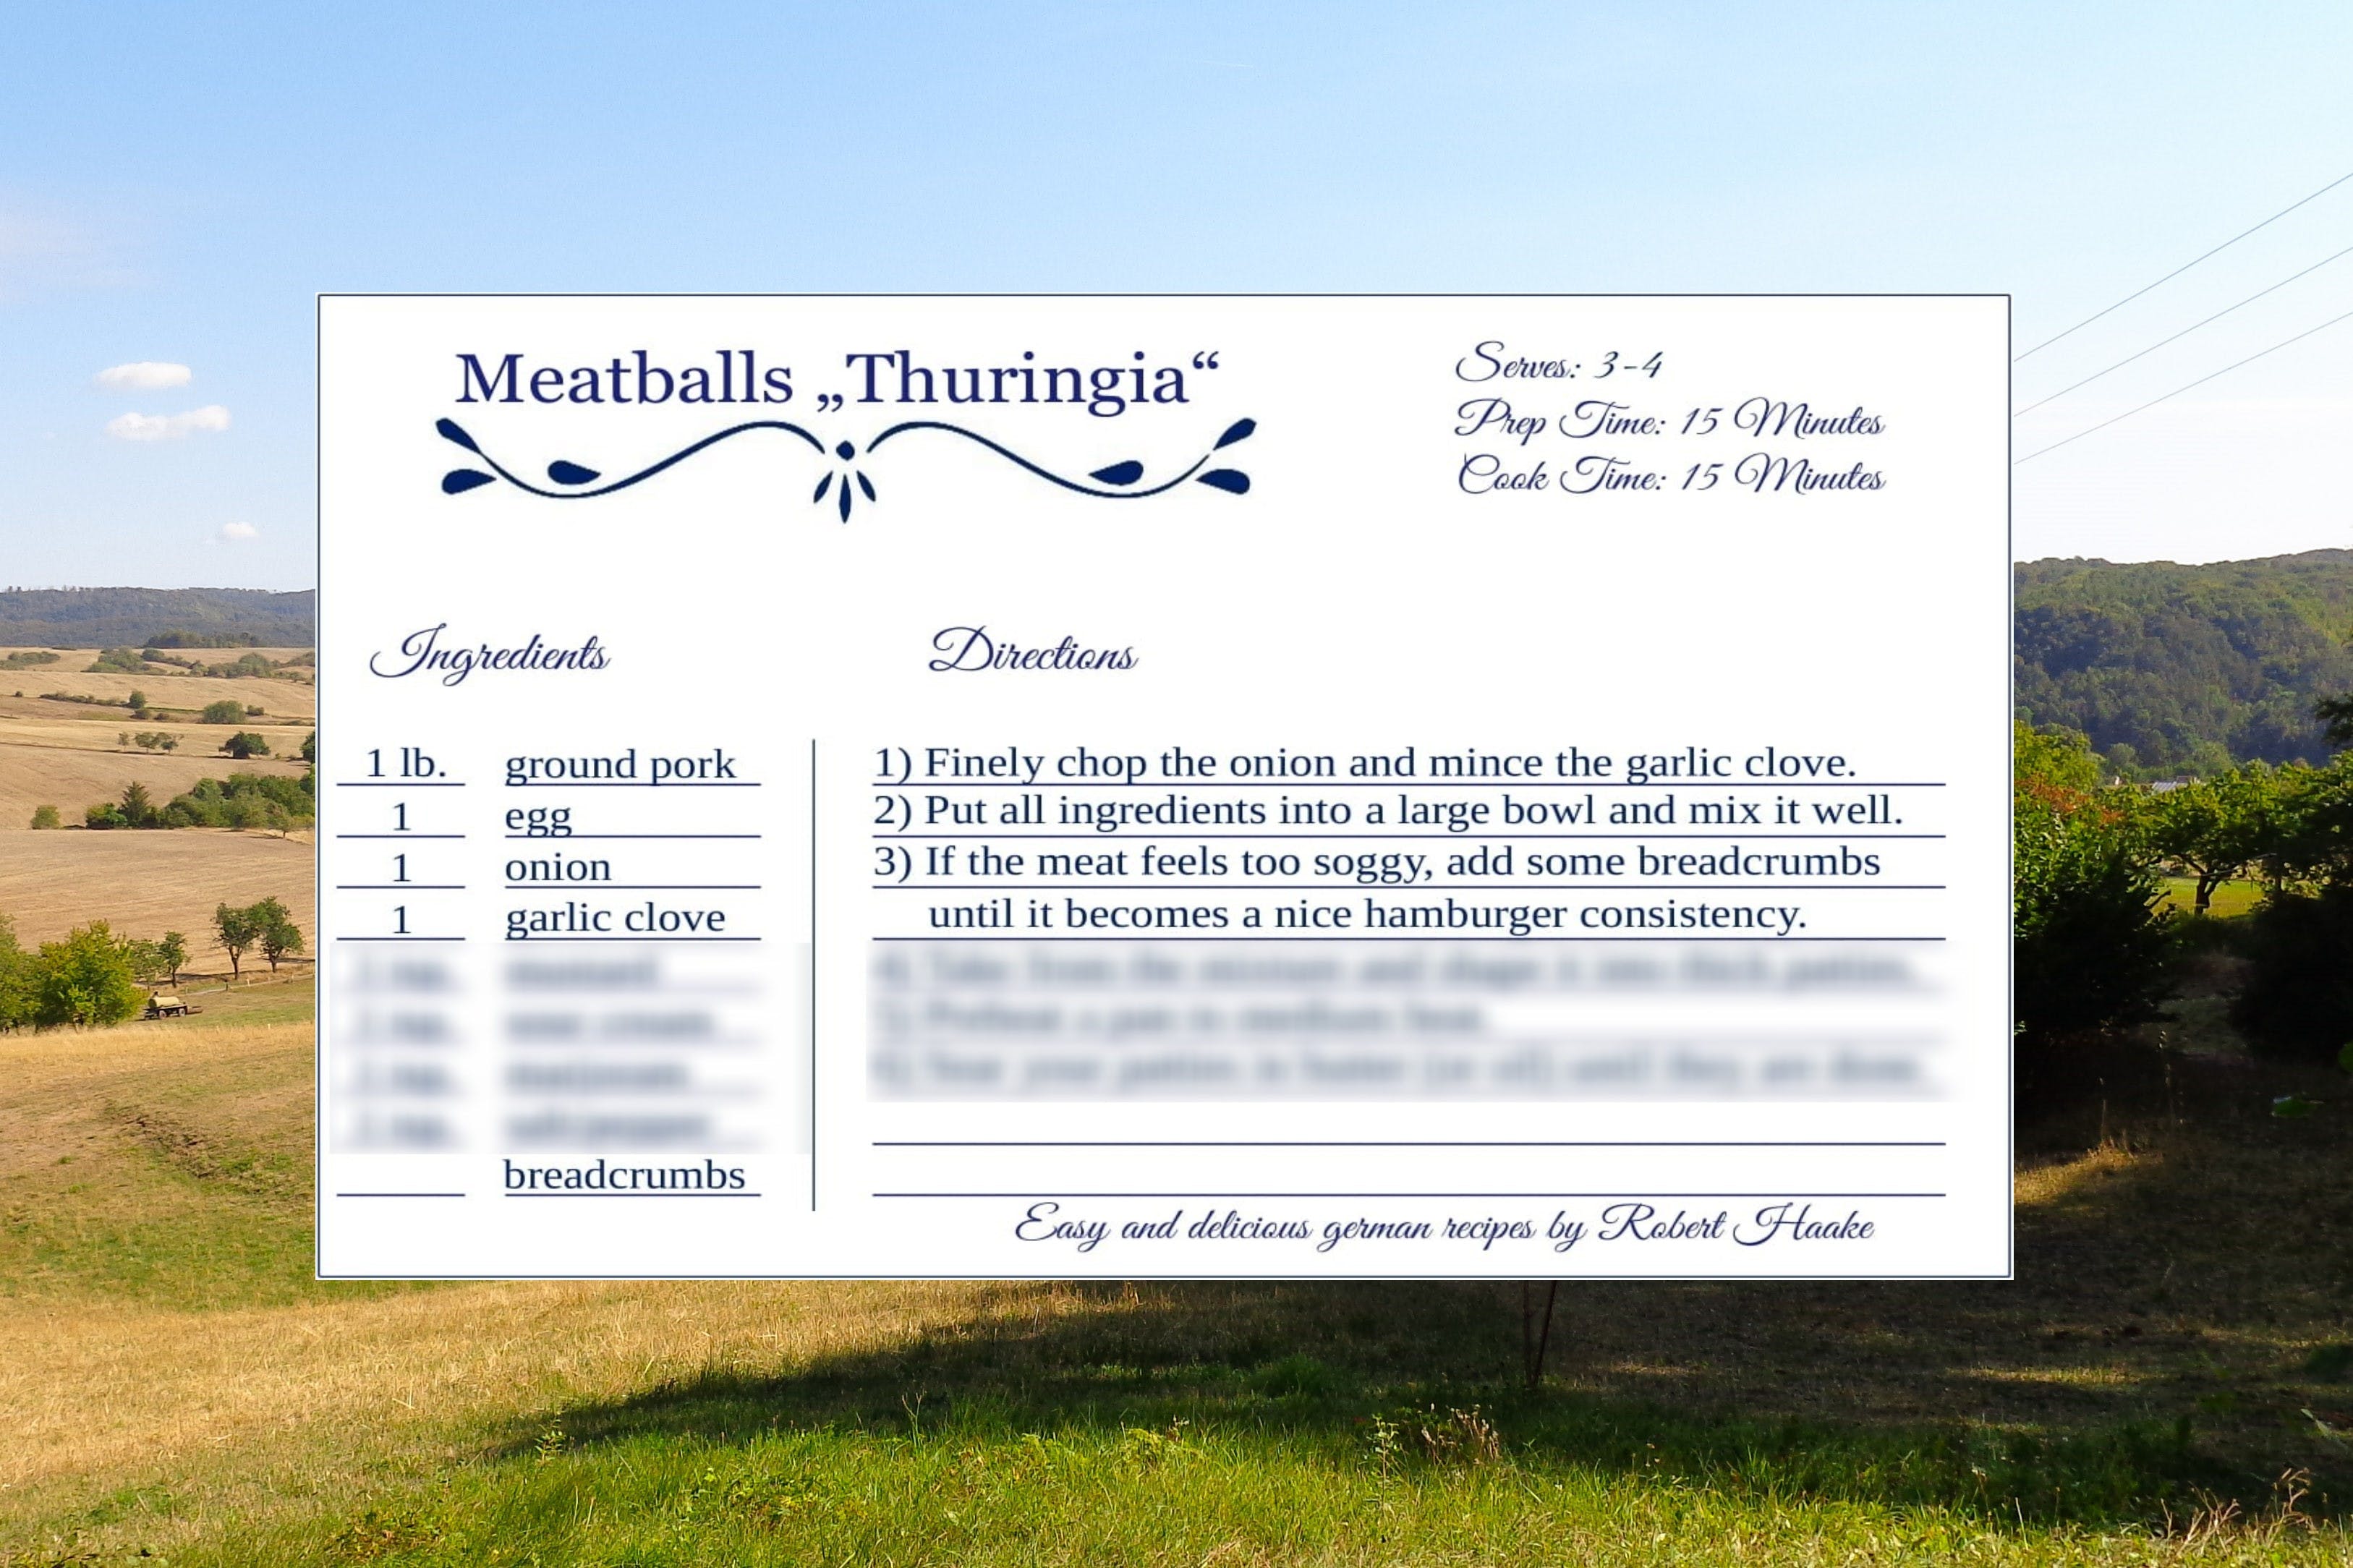 Meatball "Thuringia" media 1